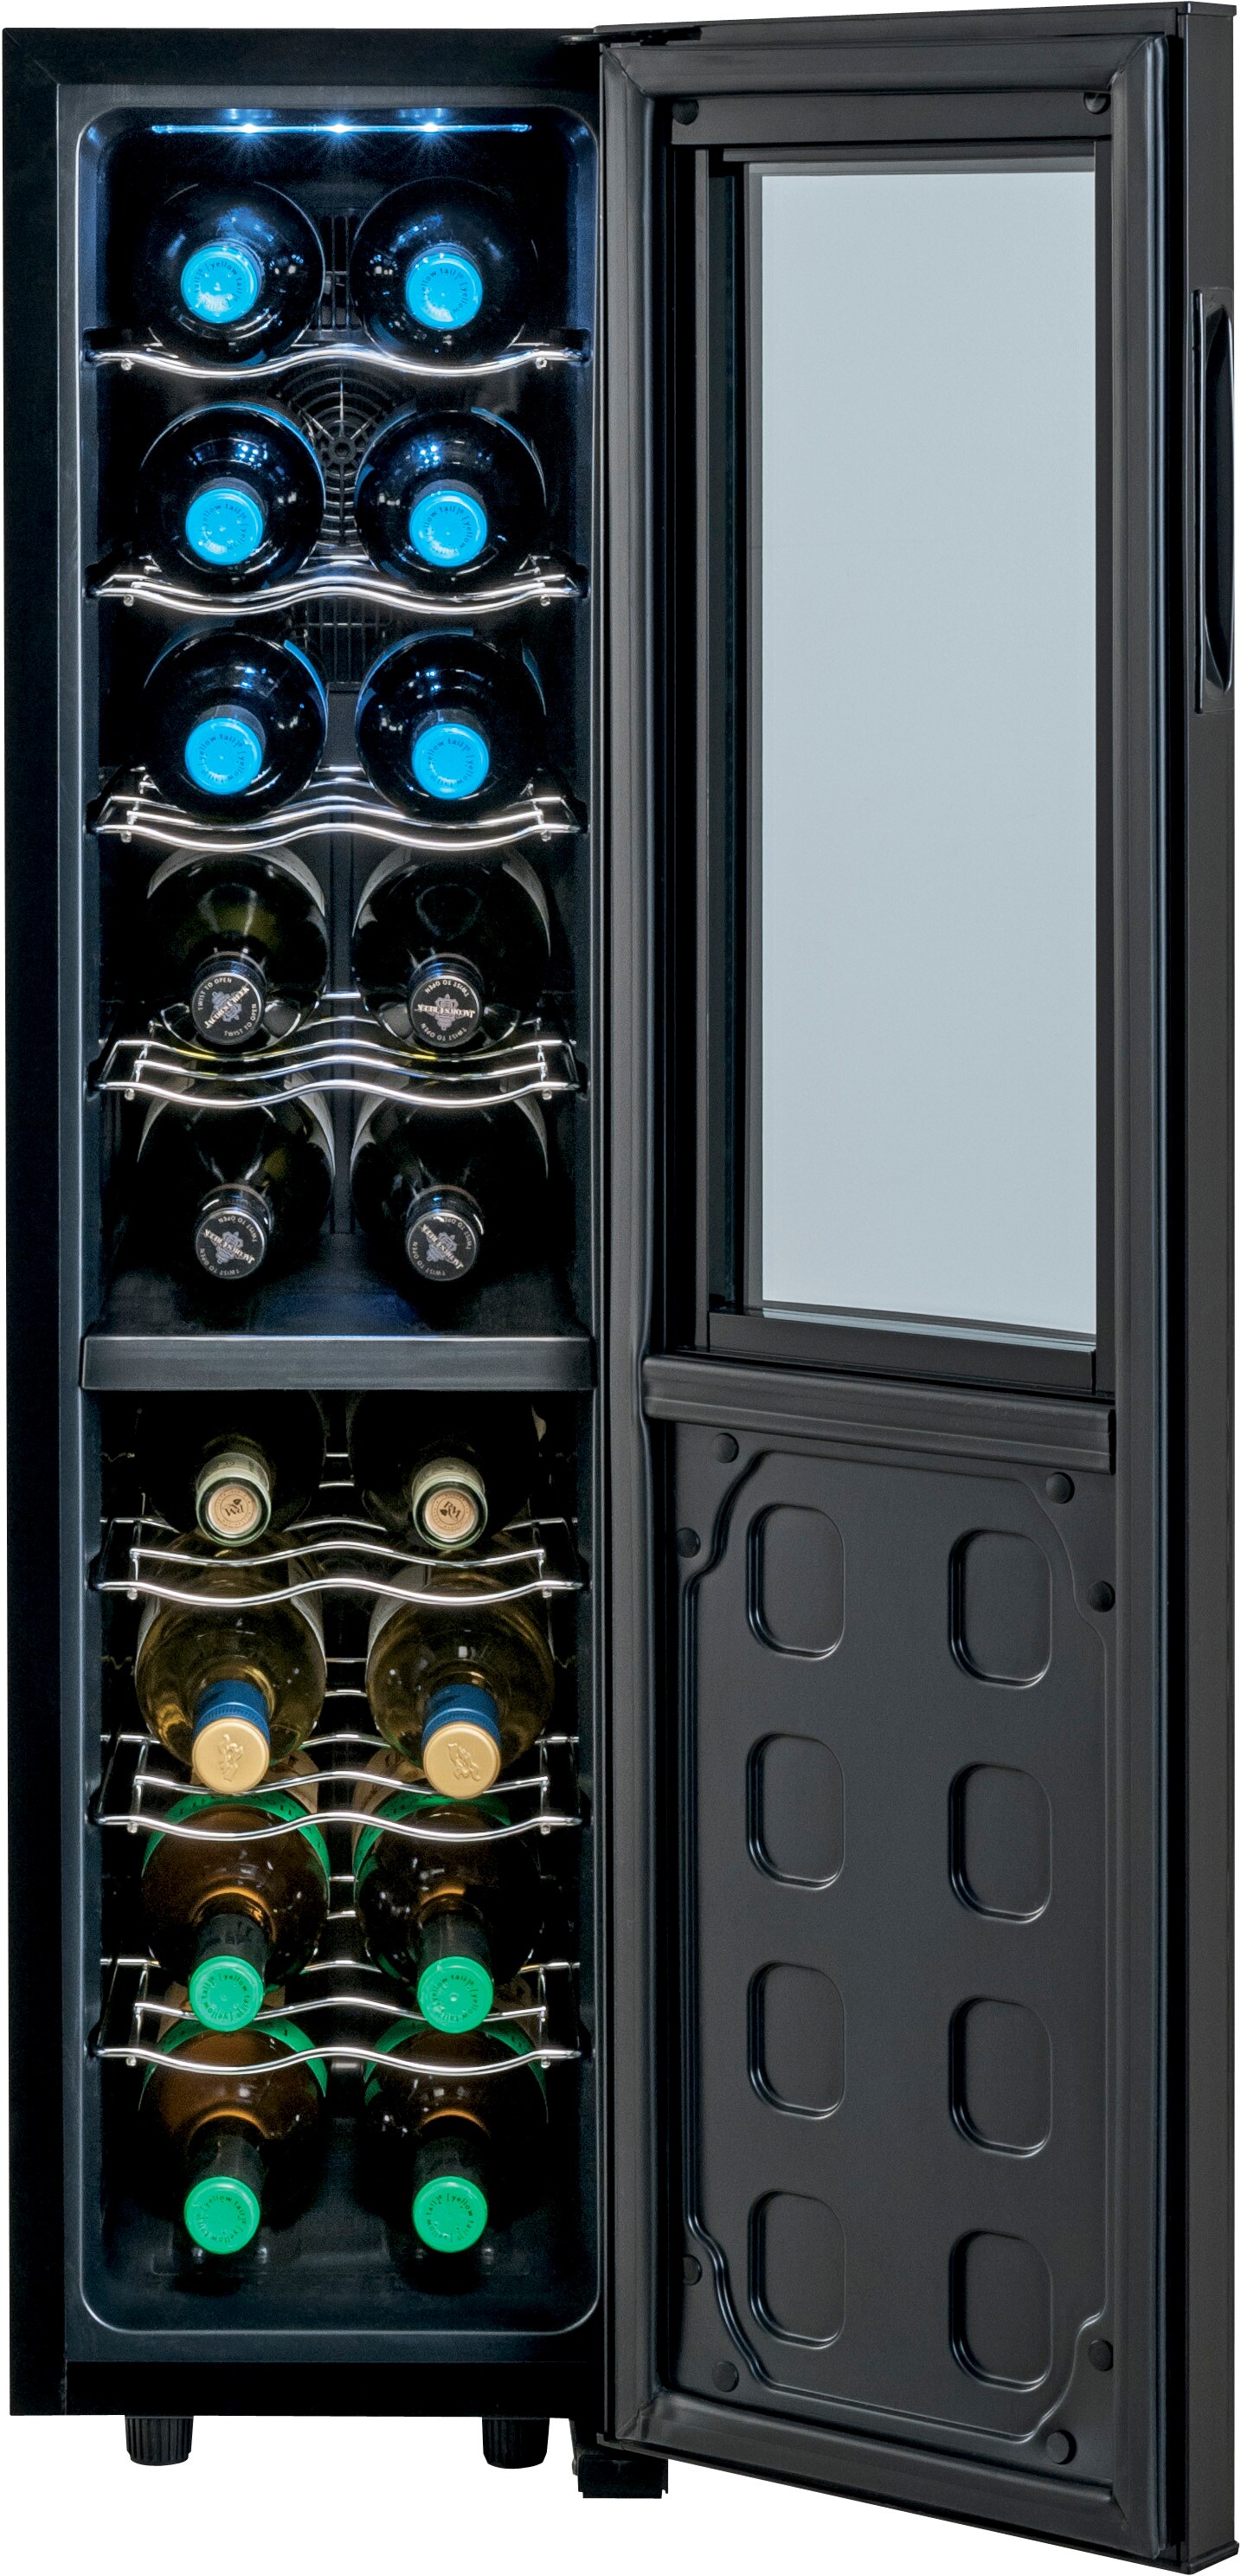 40+ Frigidaire wine cooler temperature settings ideas in 2021 